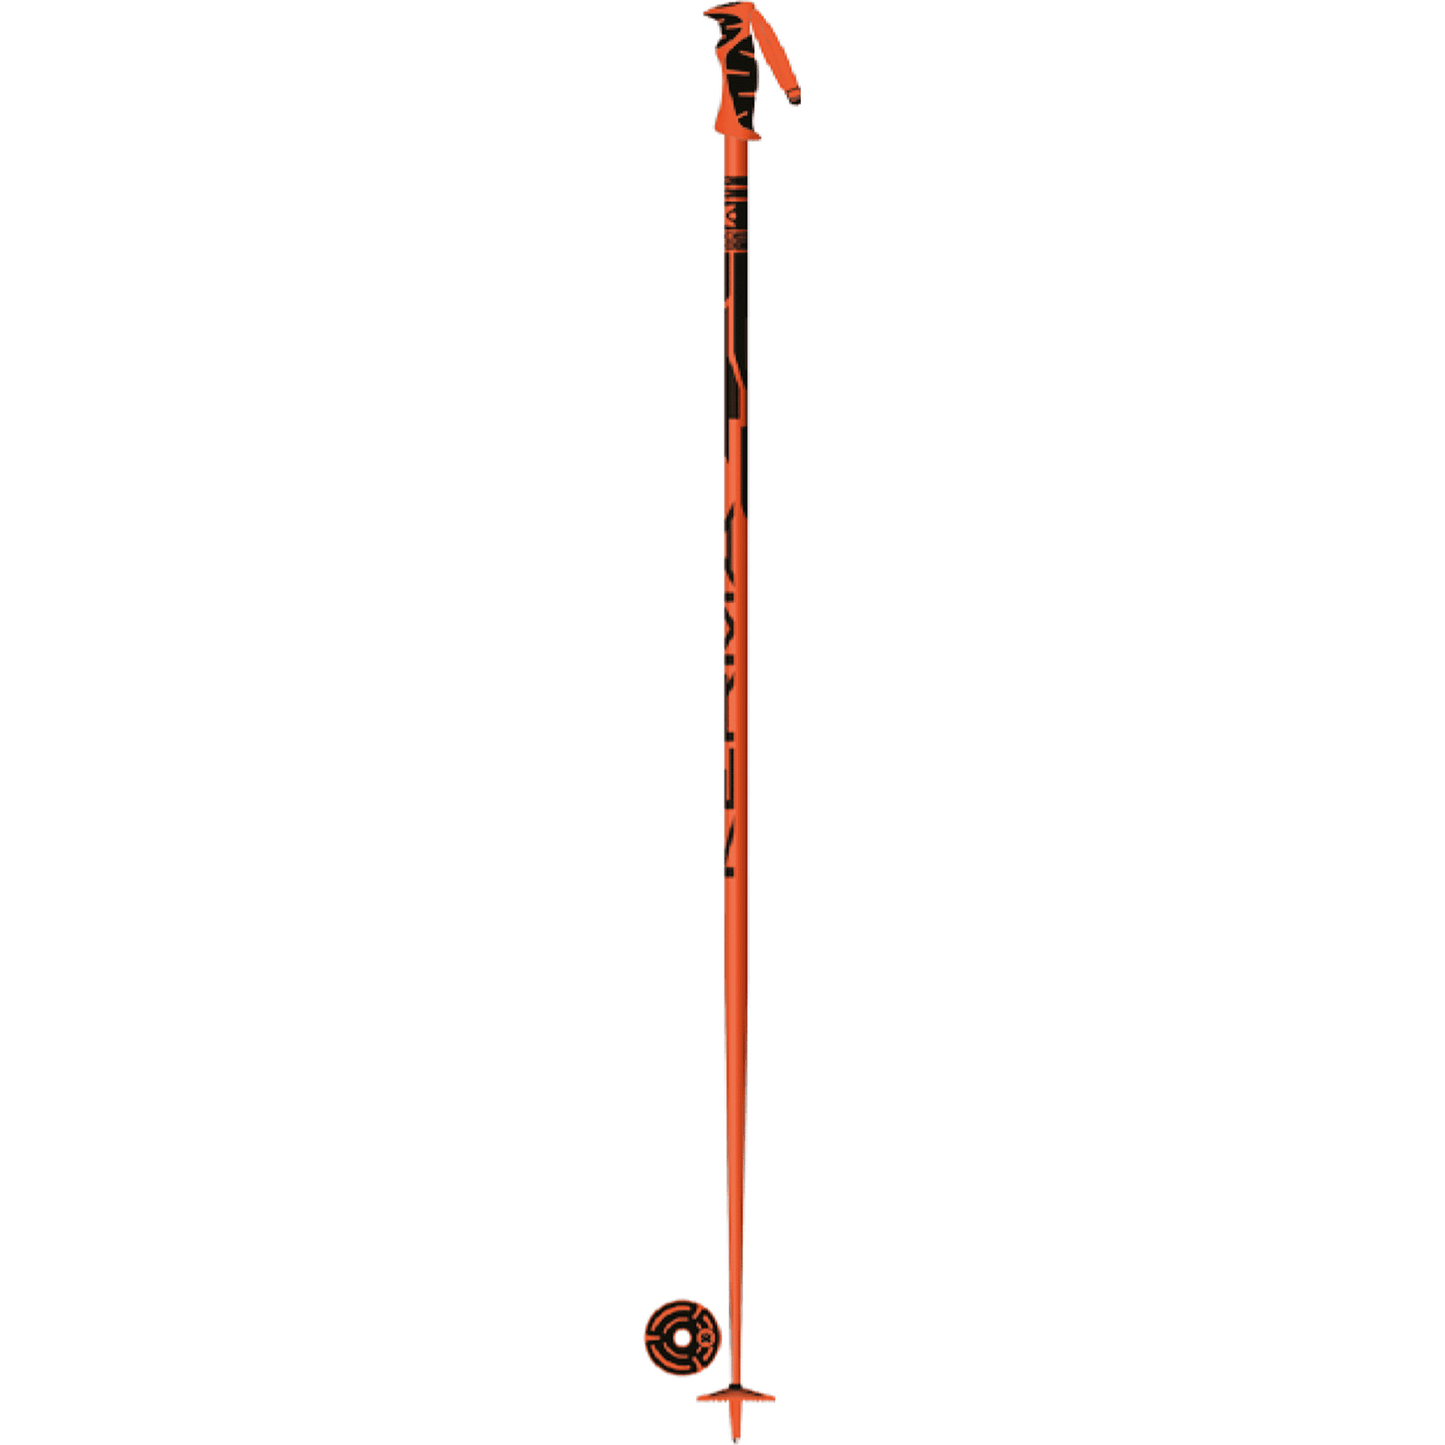 Kerma Vector Ski Poles Orange